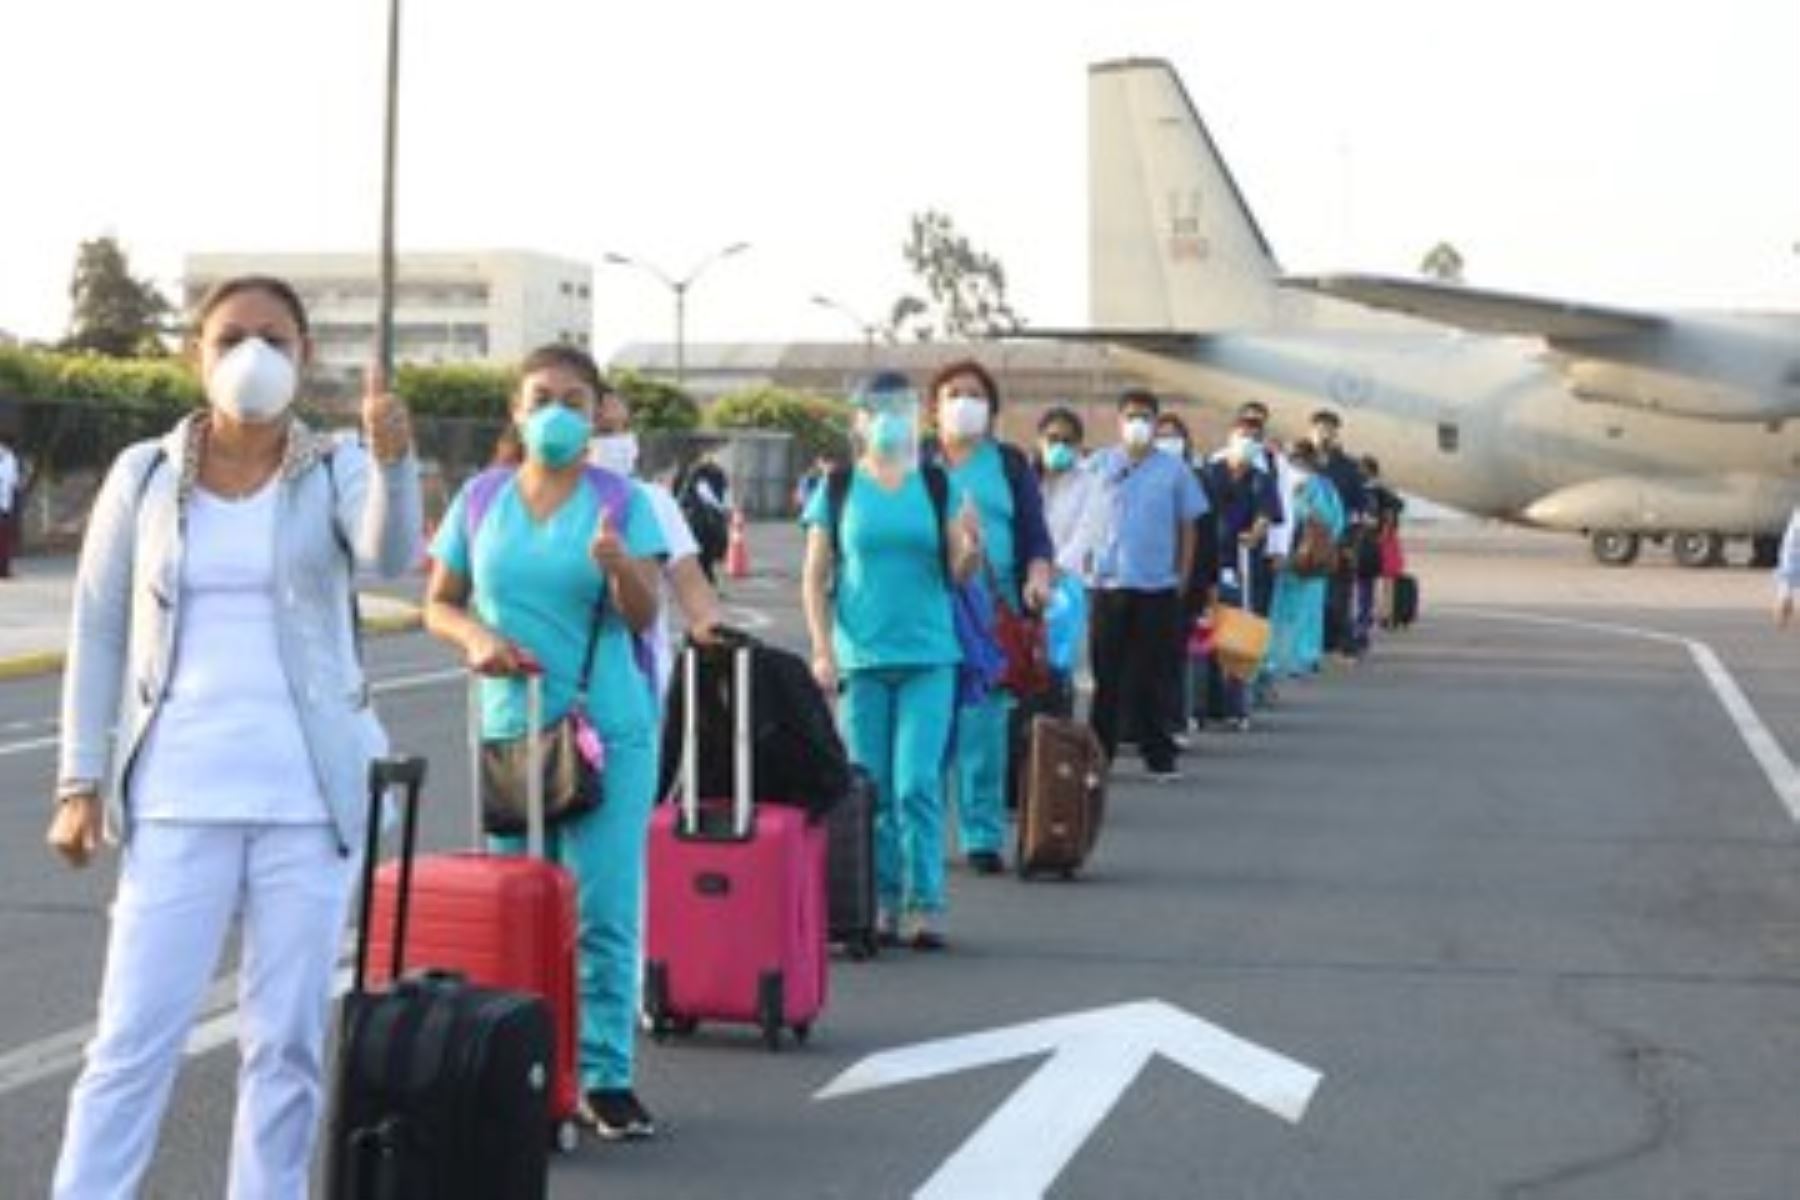 Equipo, conformado por médicos, enfermeras y técnicos de enfermería, viaja a Lambayeque y Loreto para reforzar atención de salud en esas regiones afectadas por la pandemia de coronavirus (covid-19).